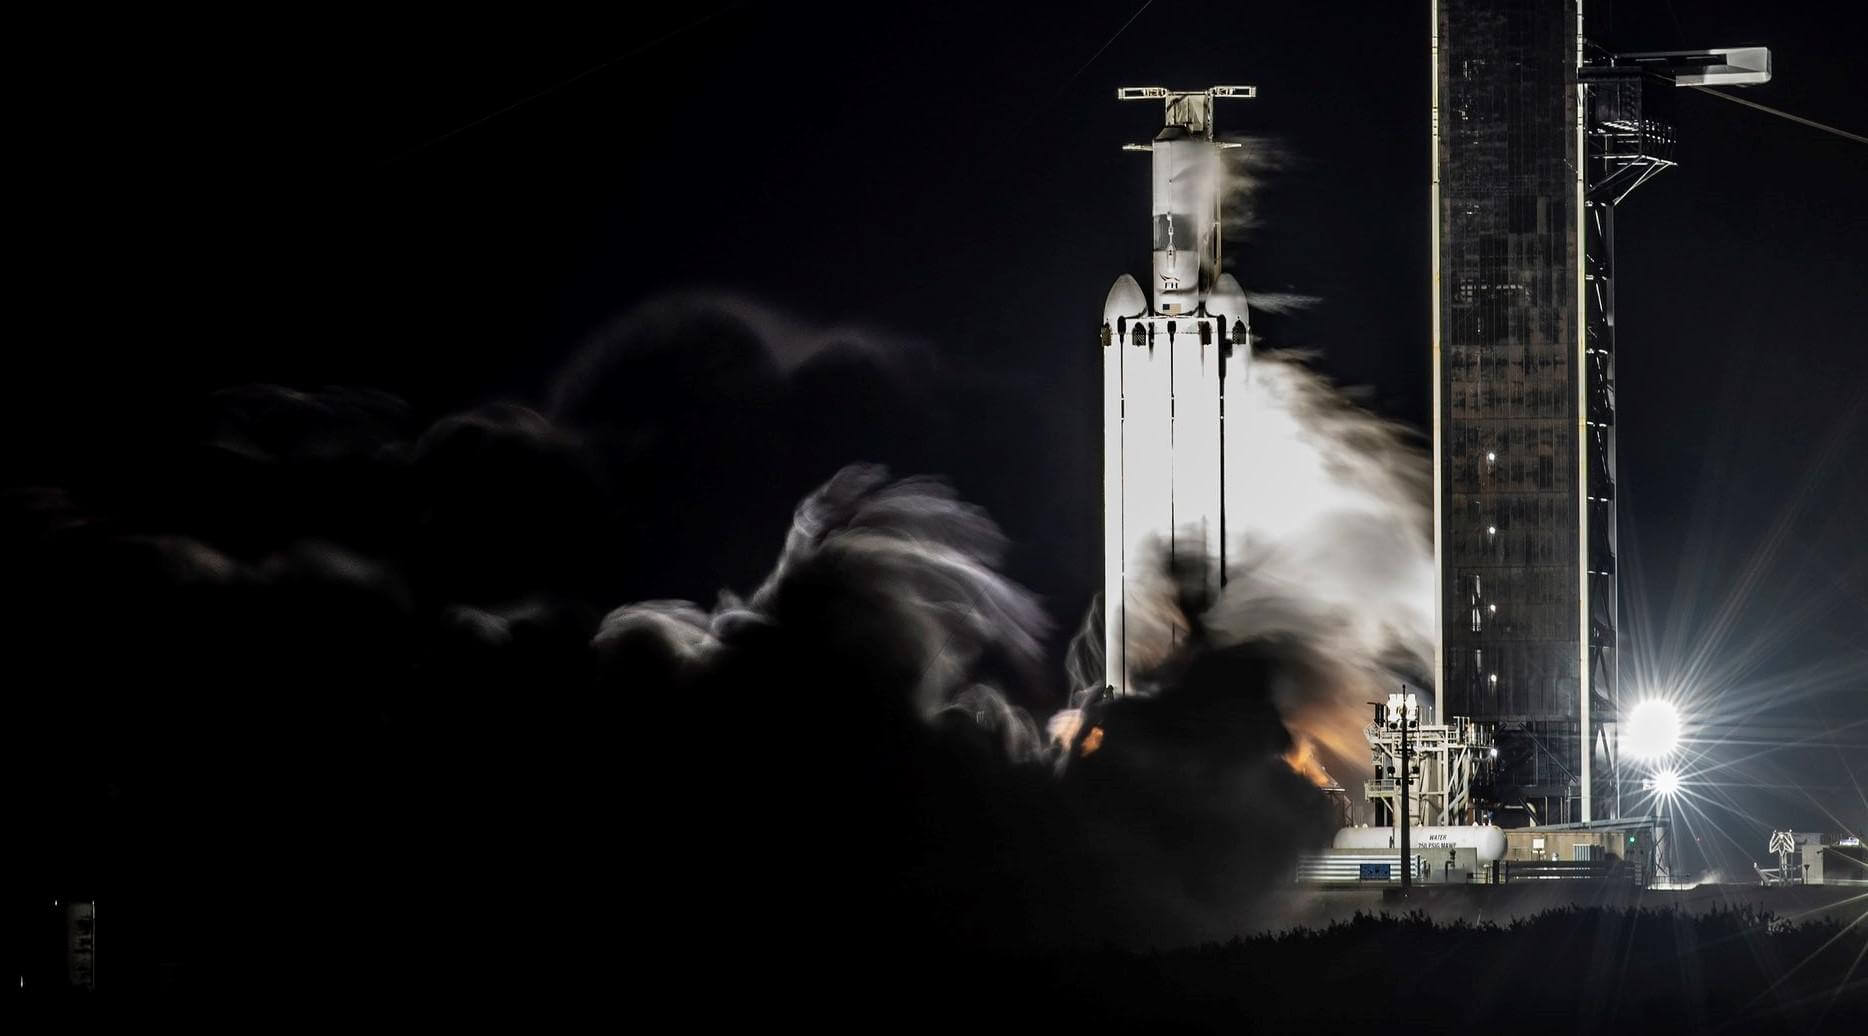 صاروخ سبيس إكس فالكون الثقيل يمر باختبار إطلاق نار ثابت لمدة ثلاث سنوات